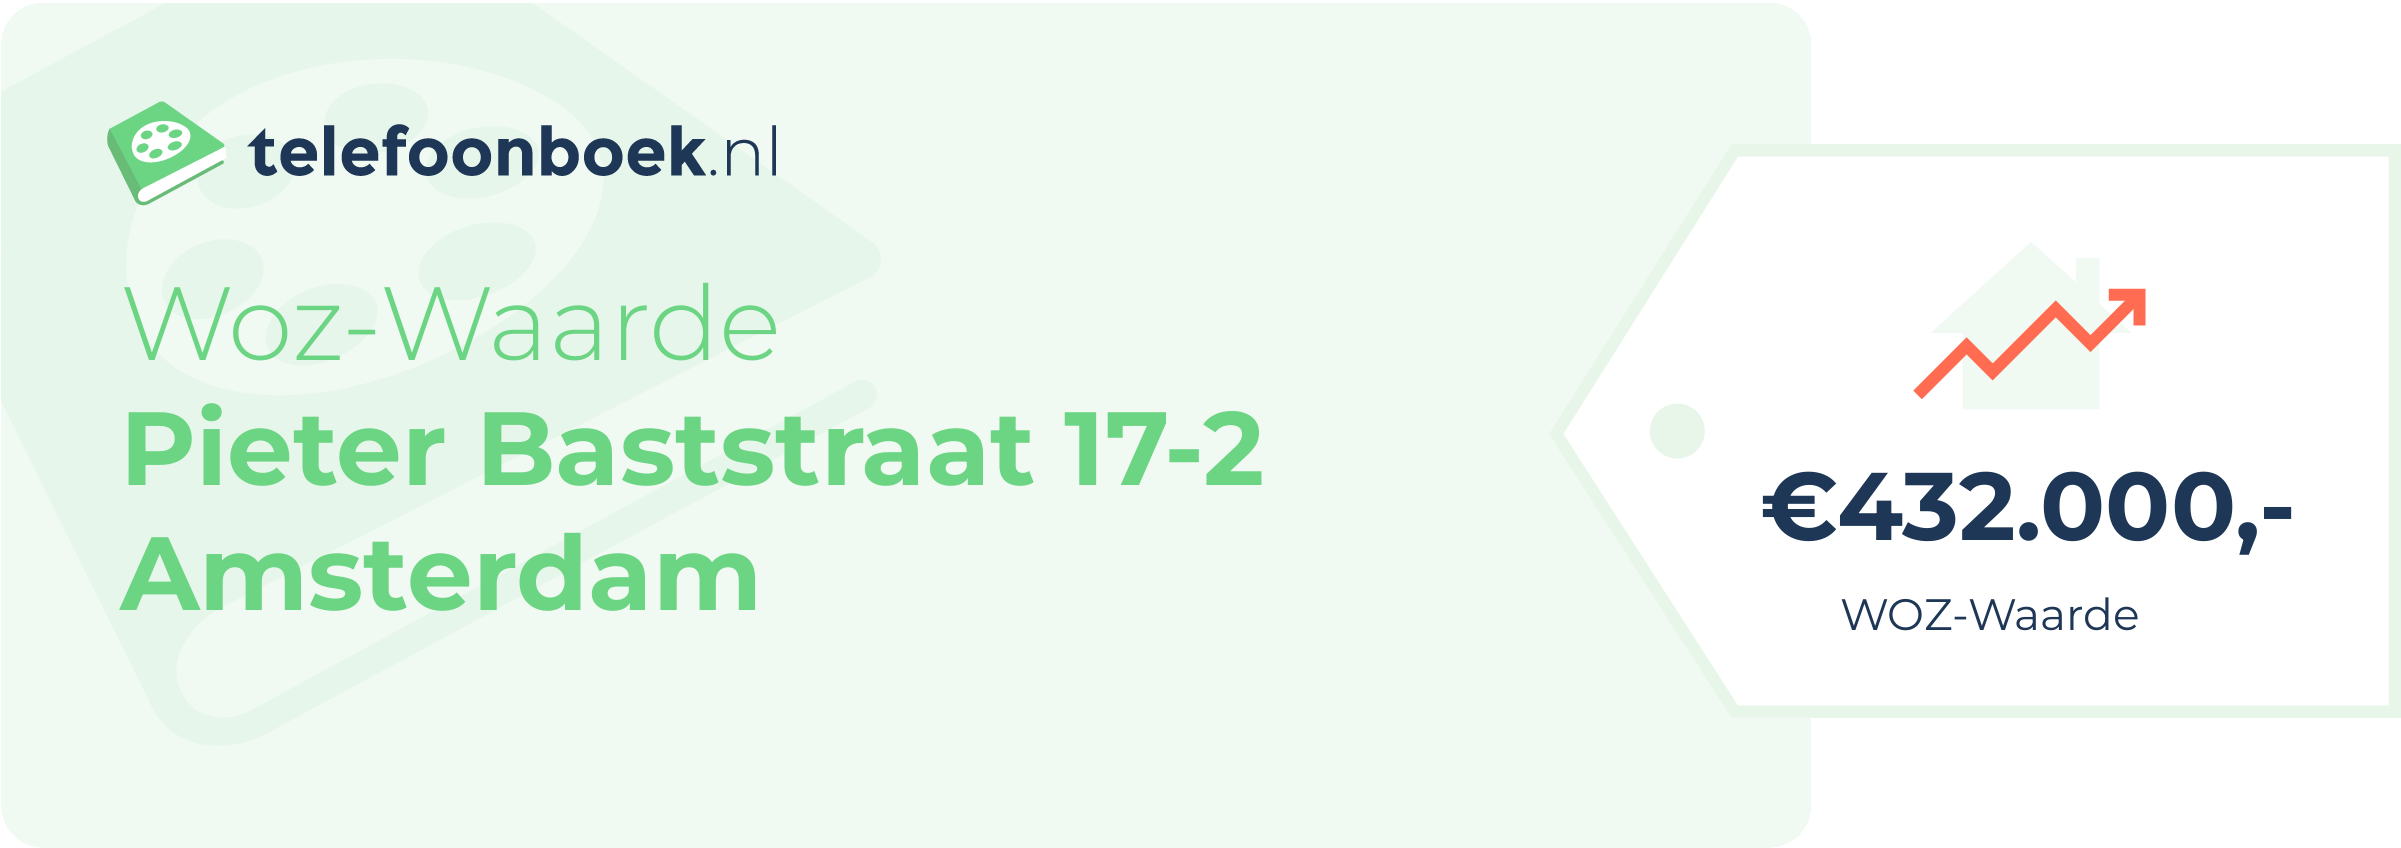 WOZ-waarde Pieter Baststraat 17-2 Amsterdam